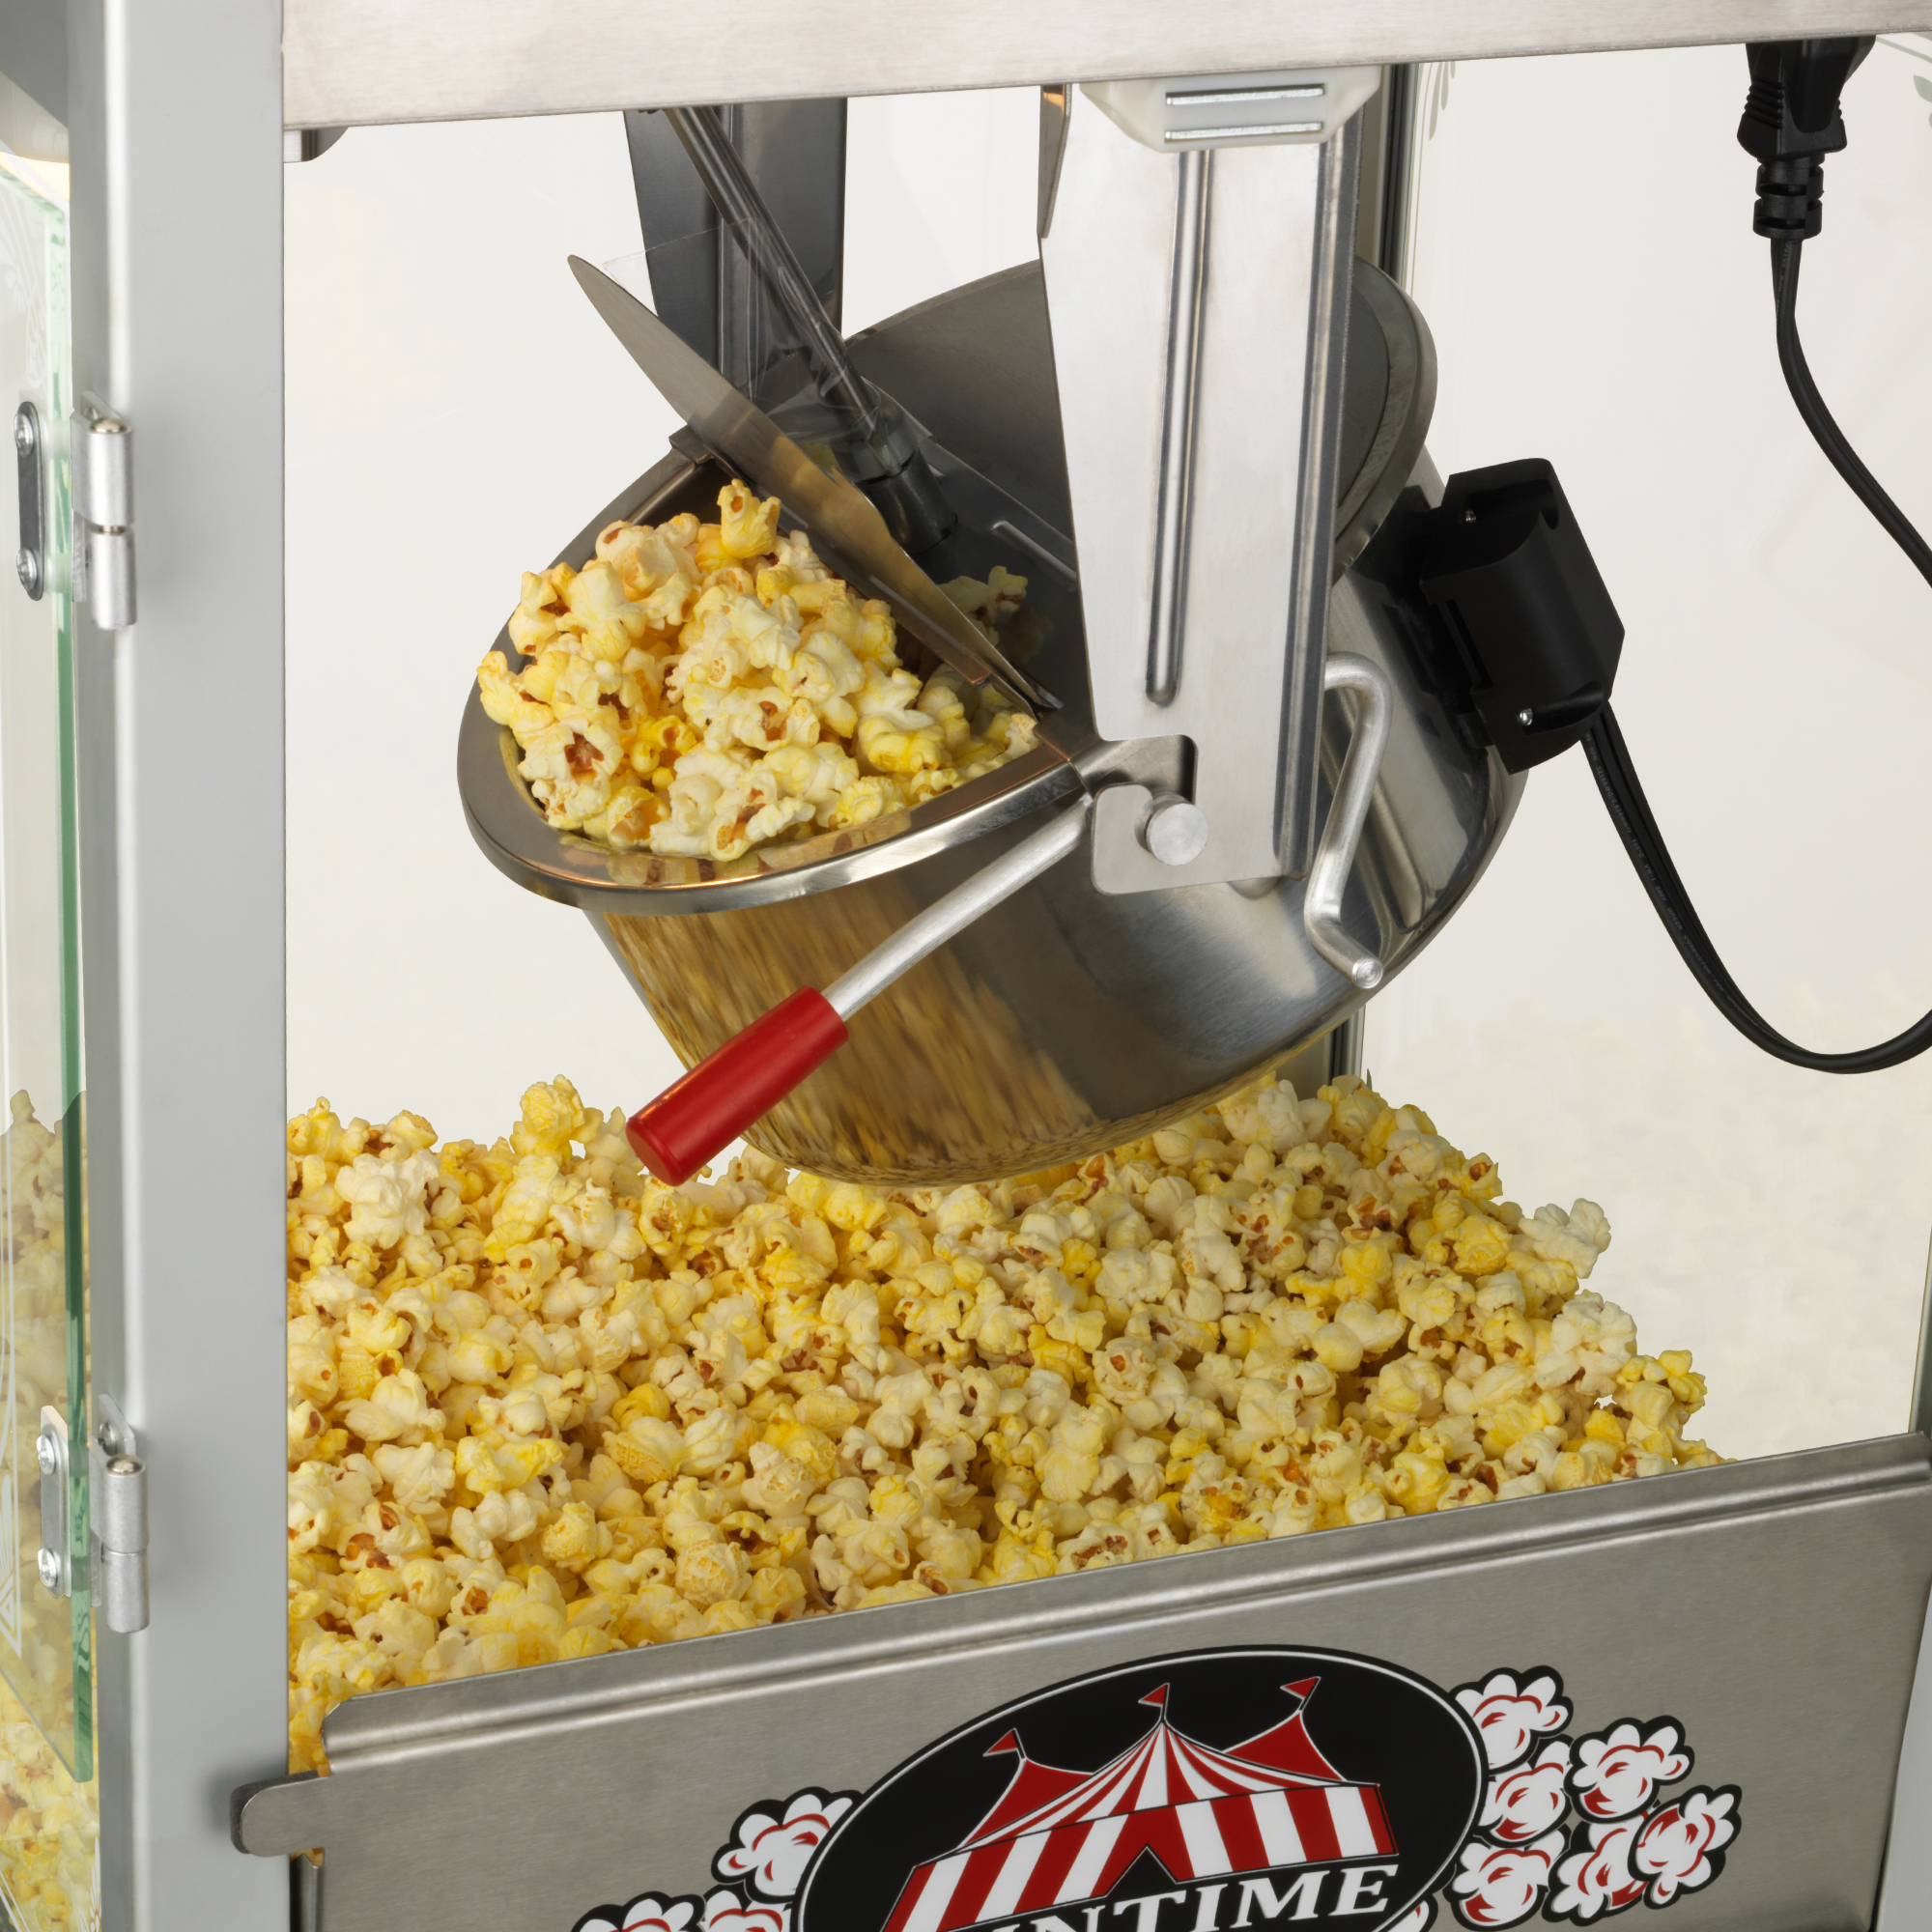 2408 8oz Fun Pop Classic Popcorn Popper / Machine